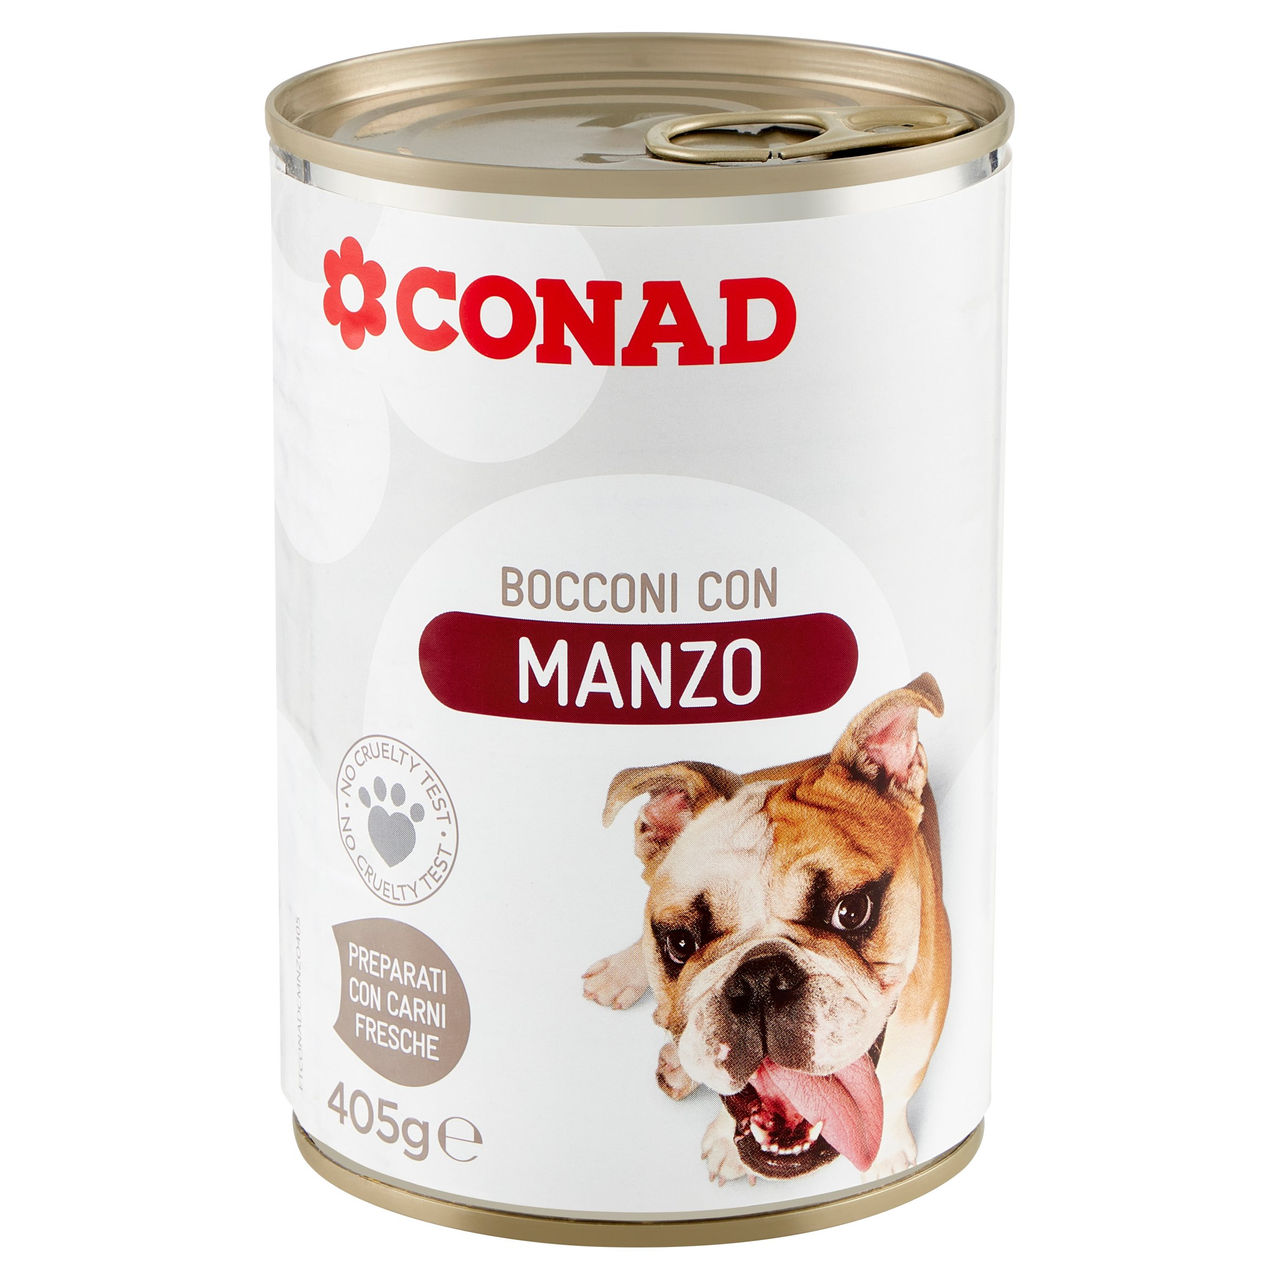 Bocconi con Manzo 405 g Conad in vendita online